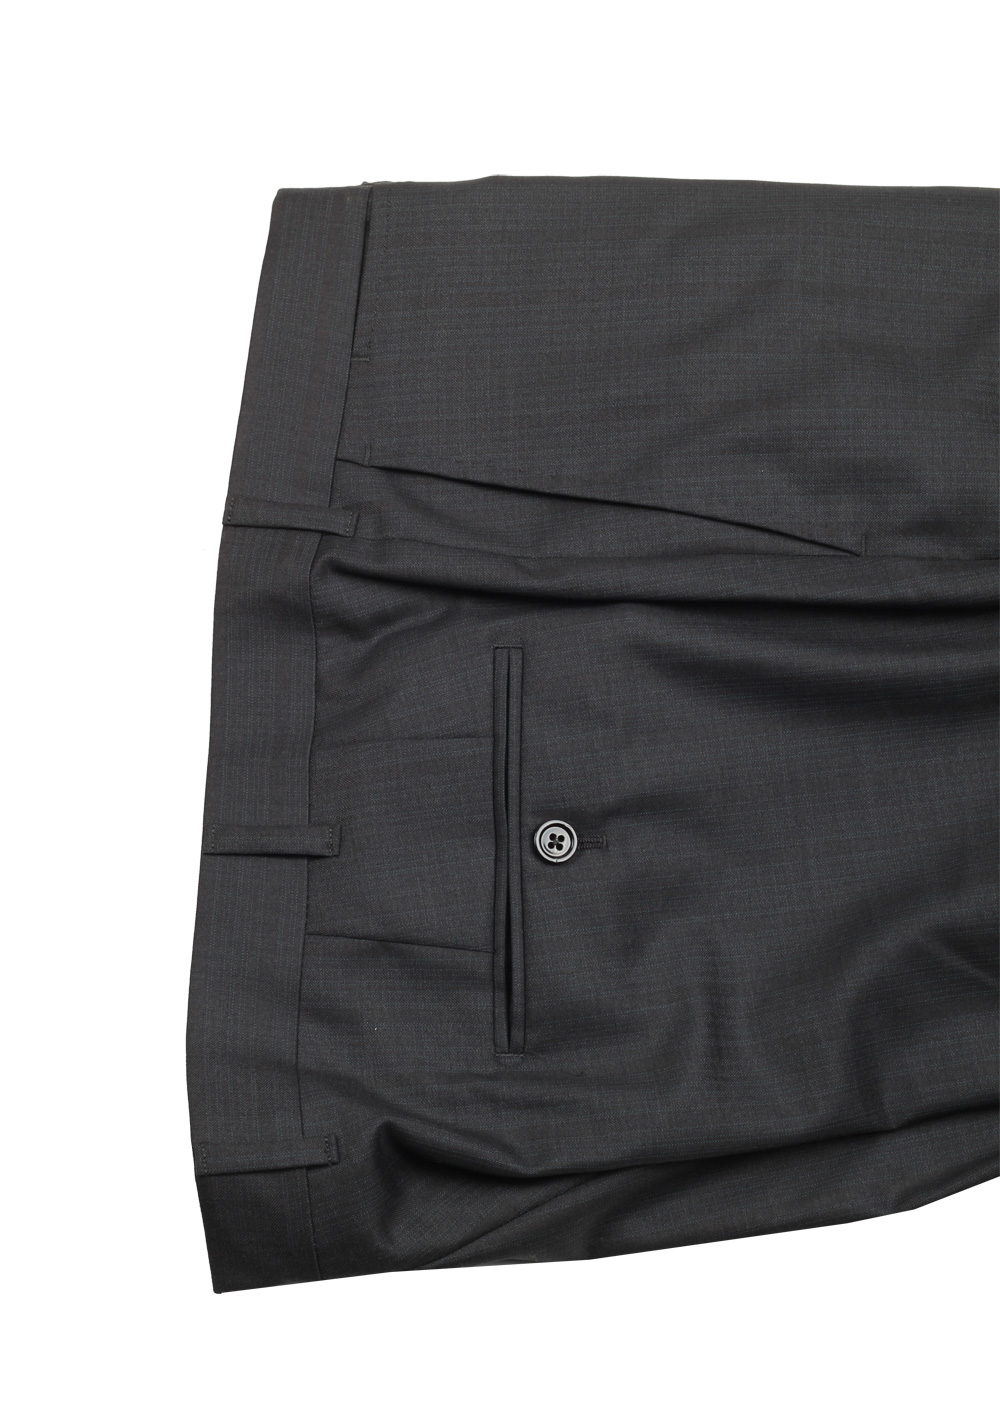 Ermenegildo Zegna Premium Couture Gray Striped Suit Size 54 / 44R U.S. | Costume Limité